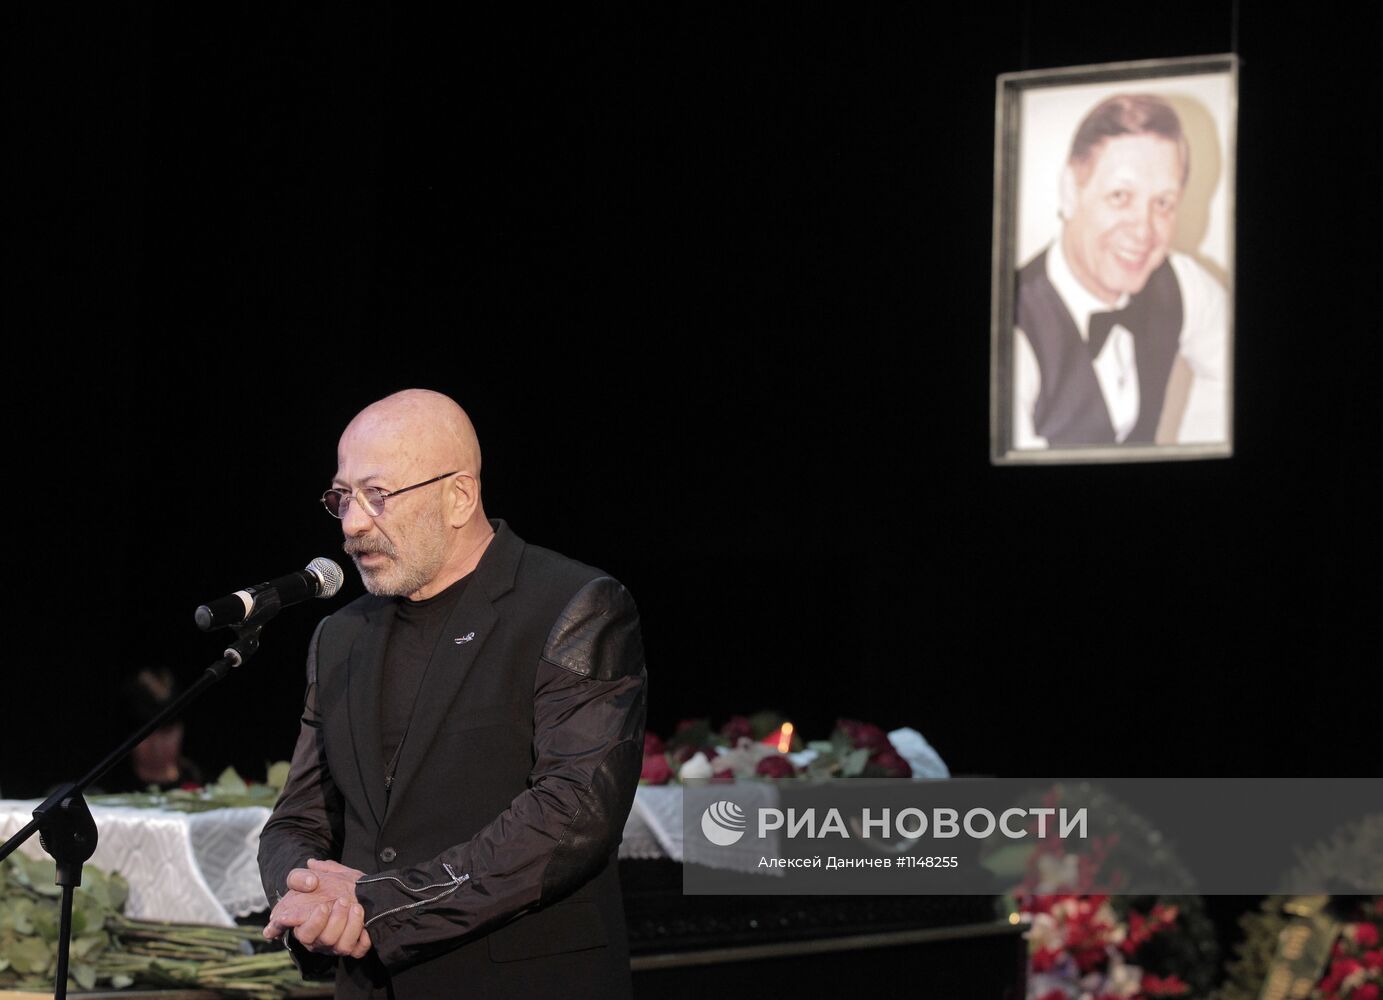 Прощание с певцом Эдуардом Хилем в Санкт-Петербурге